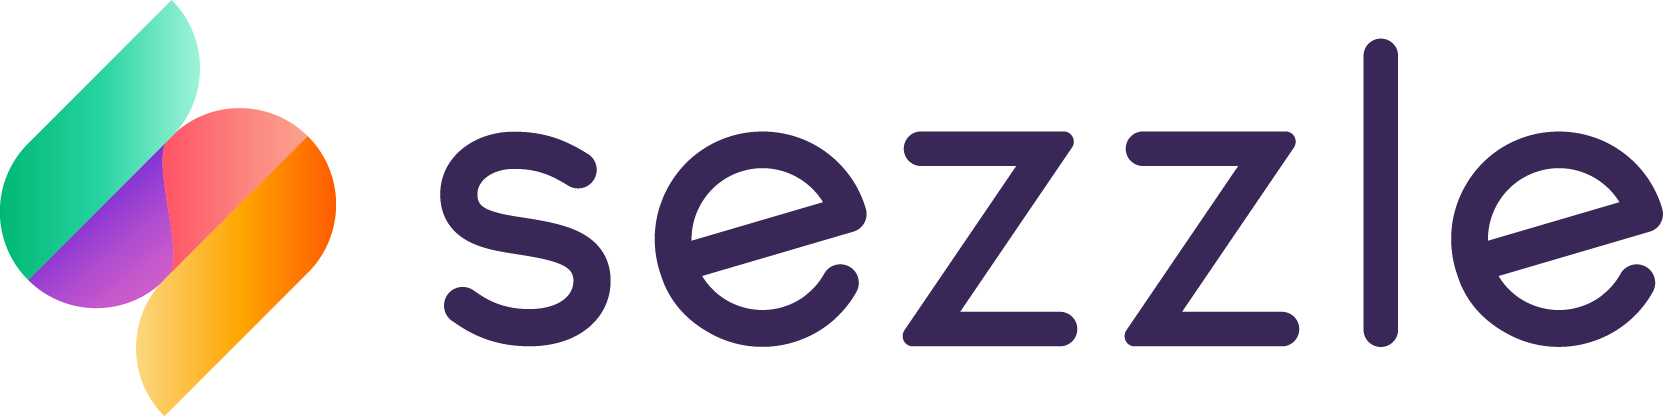 sezzle-logo.